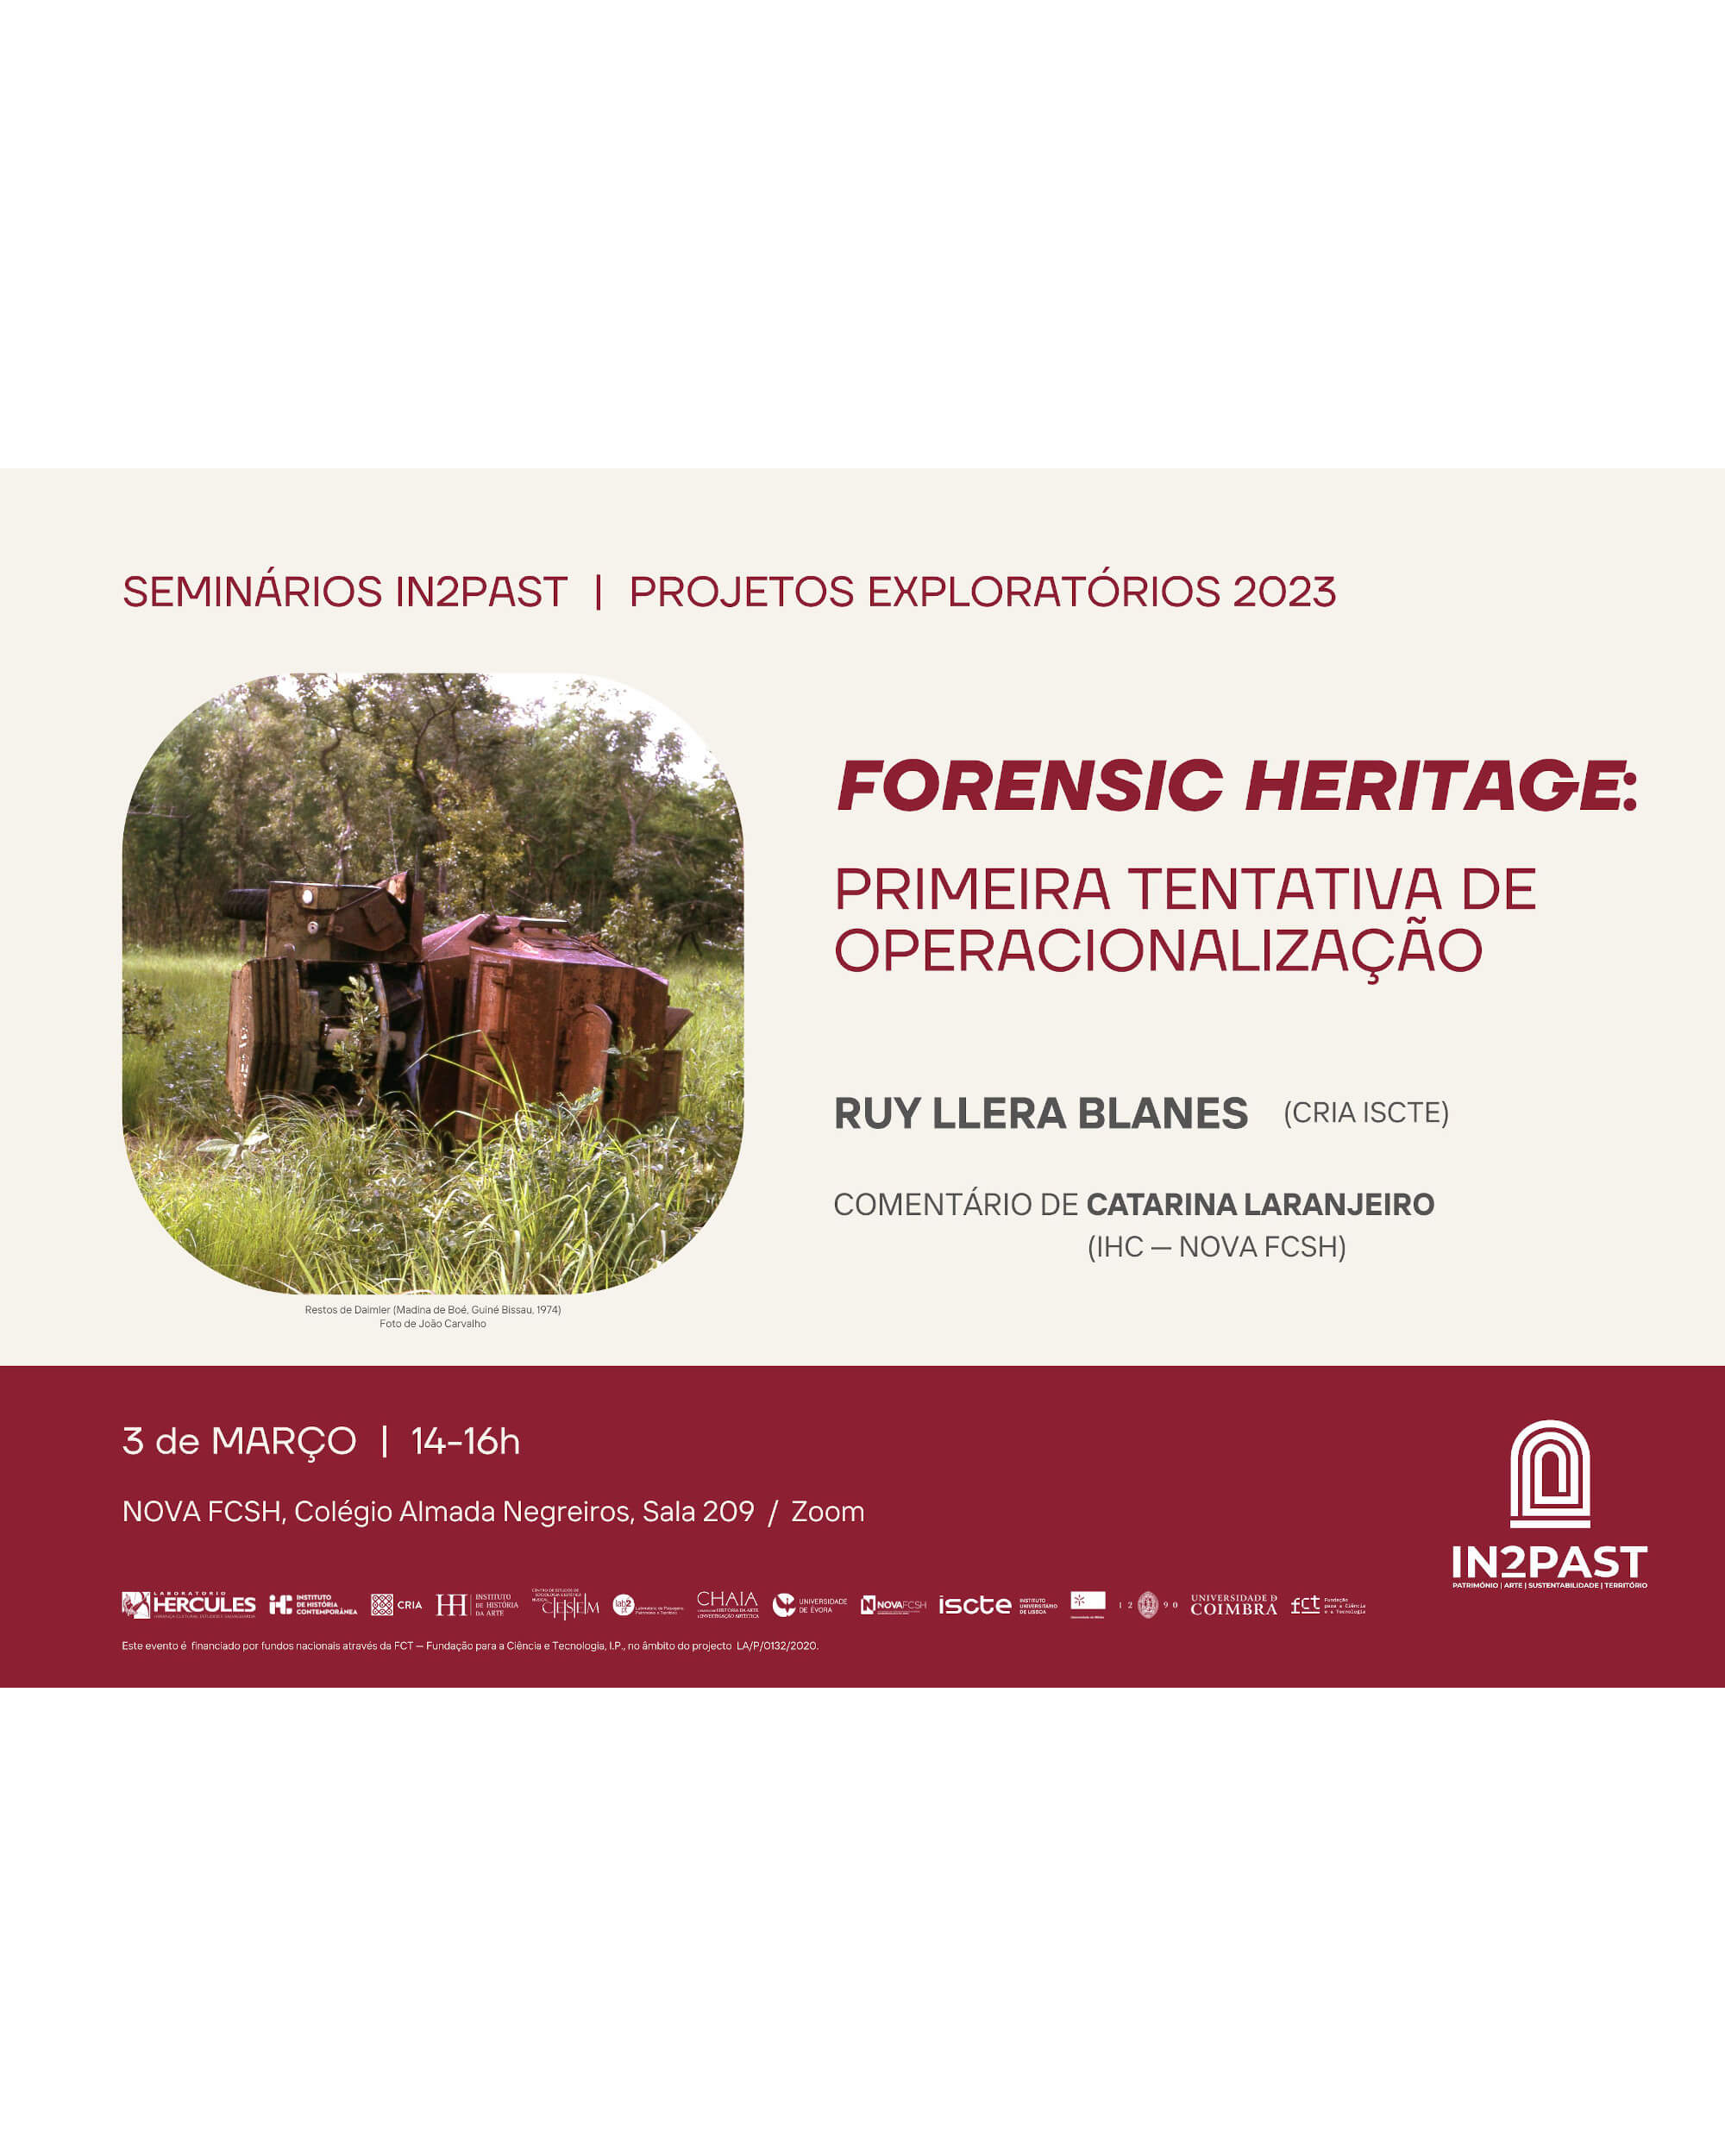 IN2PAST Seminar "Forensic Heritage: Primeira Tentativa de Operacionalização" image